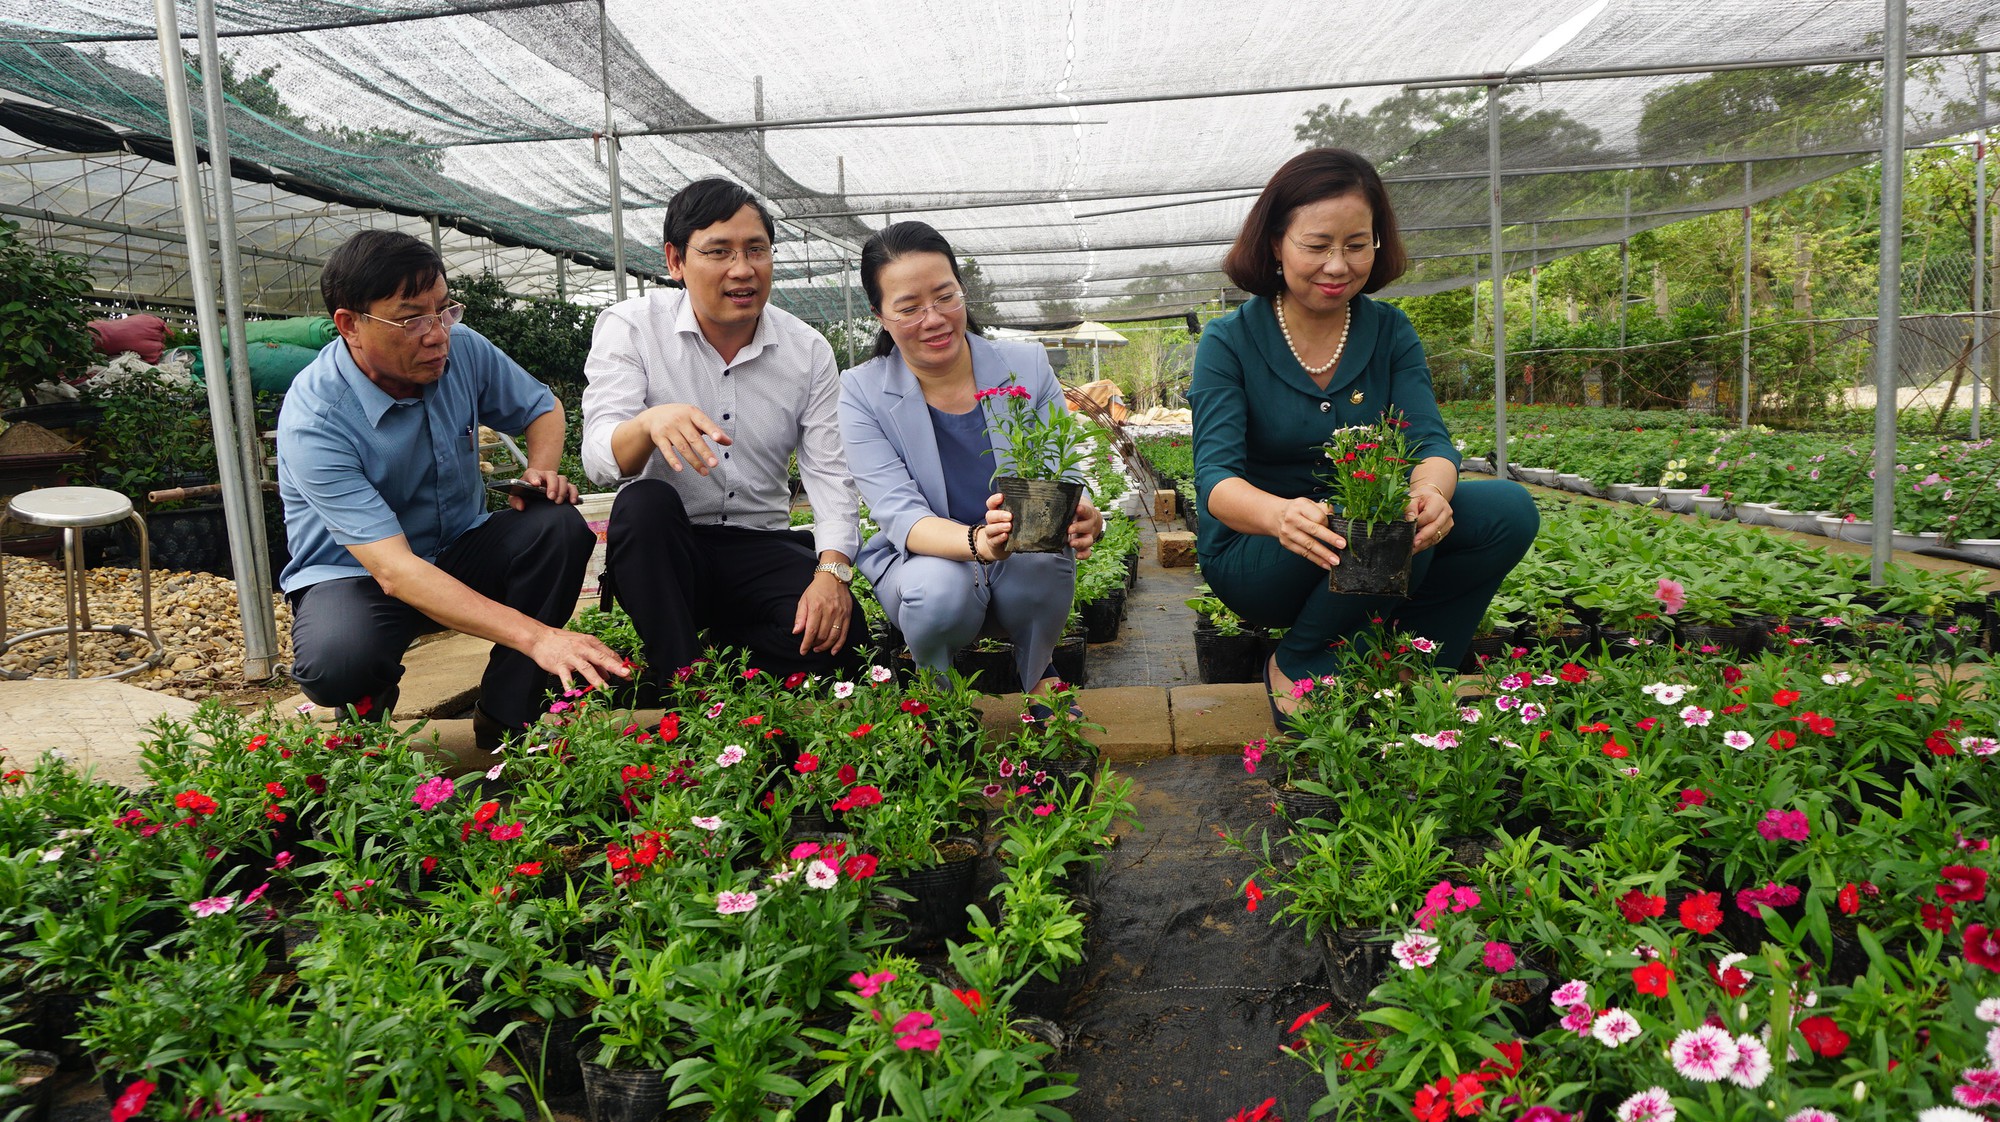 Hội Nông dân Hà Nội tạo sức lan toả từ 492 mô hình nông dân tham gia bảo vệ môi trường - Ảnh 1.